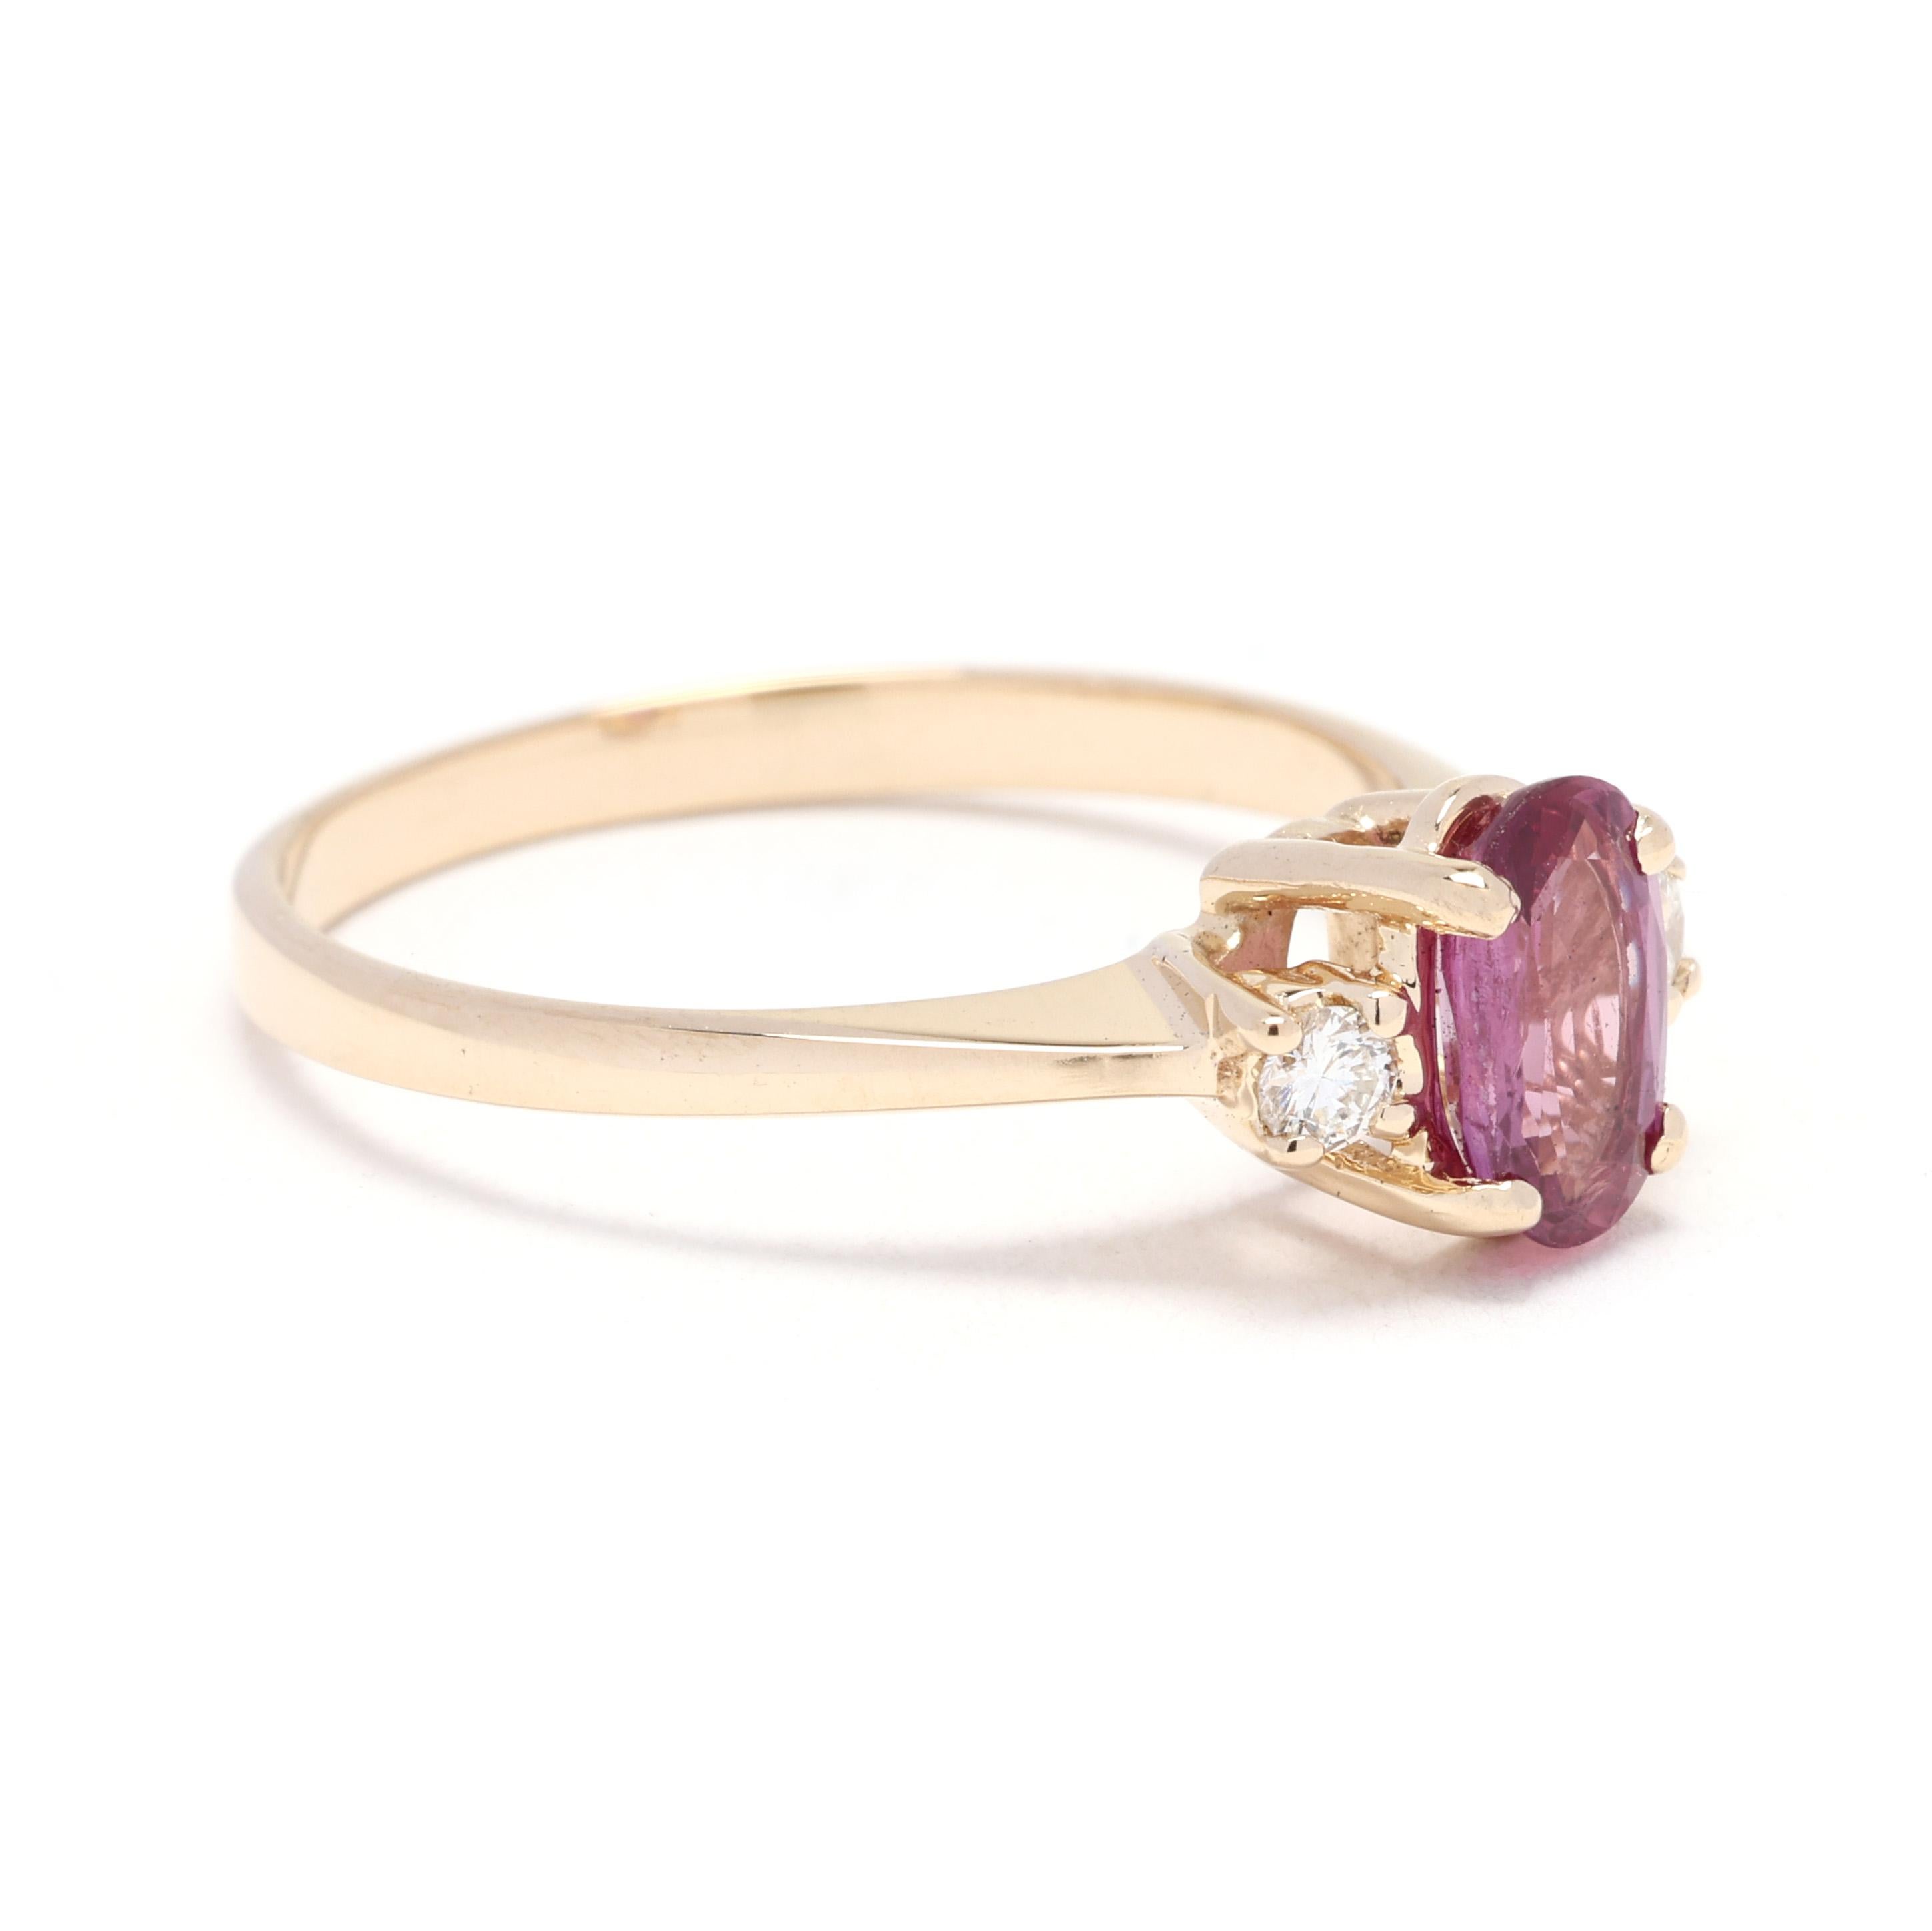 Dieser 3-Stein-Ring mit 1,08 ct Rubin und Diamant ist ein atemberaubendes Schmuckstück, das Eleganz und Charme ausstrahlt. Dieser Ring aus 14-karätigem Gelbgold trägt in der Mitte einen Rubin im Ovalschliff, der auf beiden Seiten von zwei Diamanten